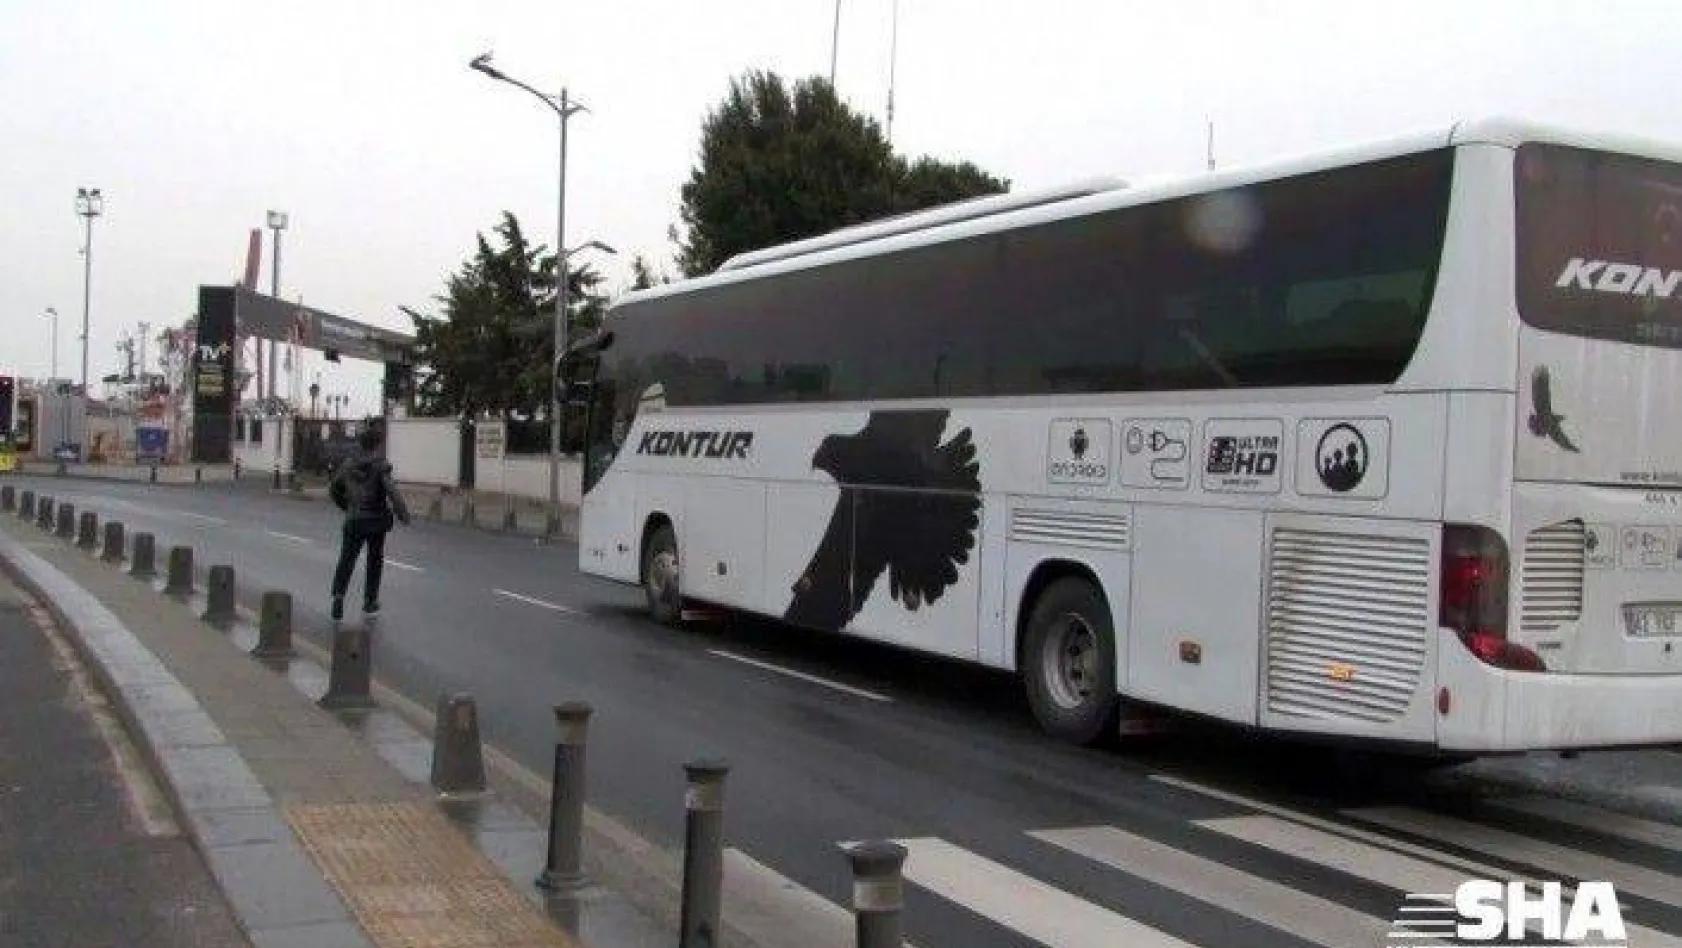 Şehirler arası otobüs seyahatleri durduruldu, Harem otogarından son otobüsler kalktı